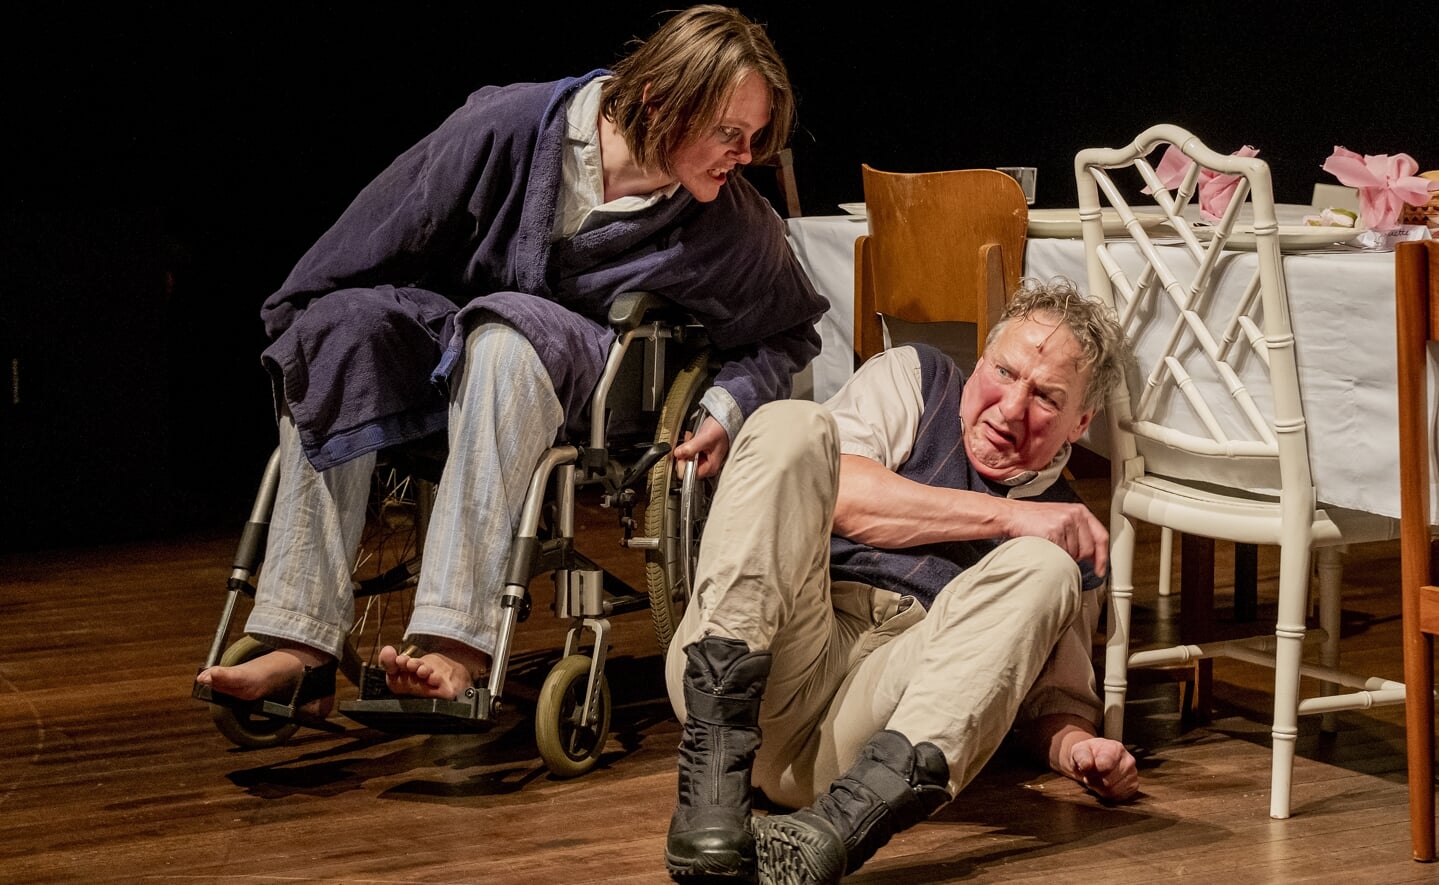 De voorstelling ALGRTM stond dit weekend op het toneel in Theater Artemis in Den Bosch. Een intense opvoering en een knappe prestatie van de acteurs, aldus een bezoeker. 